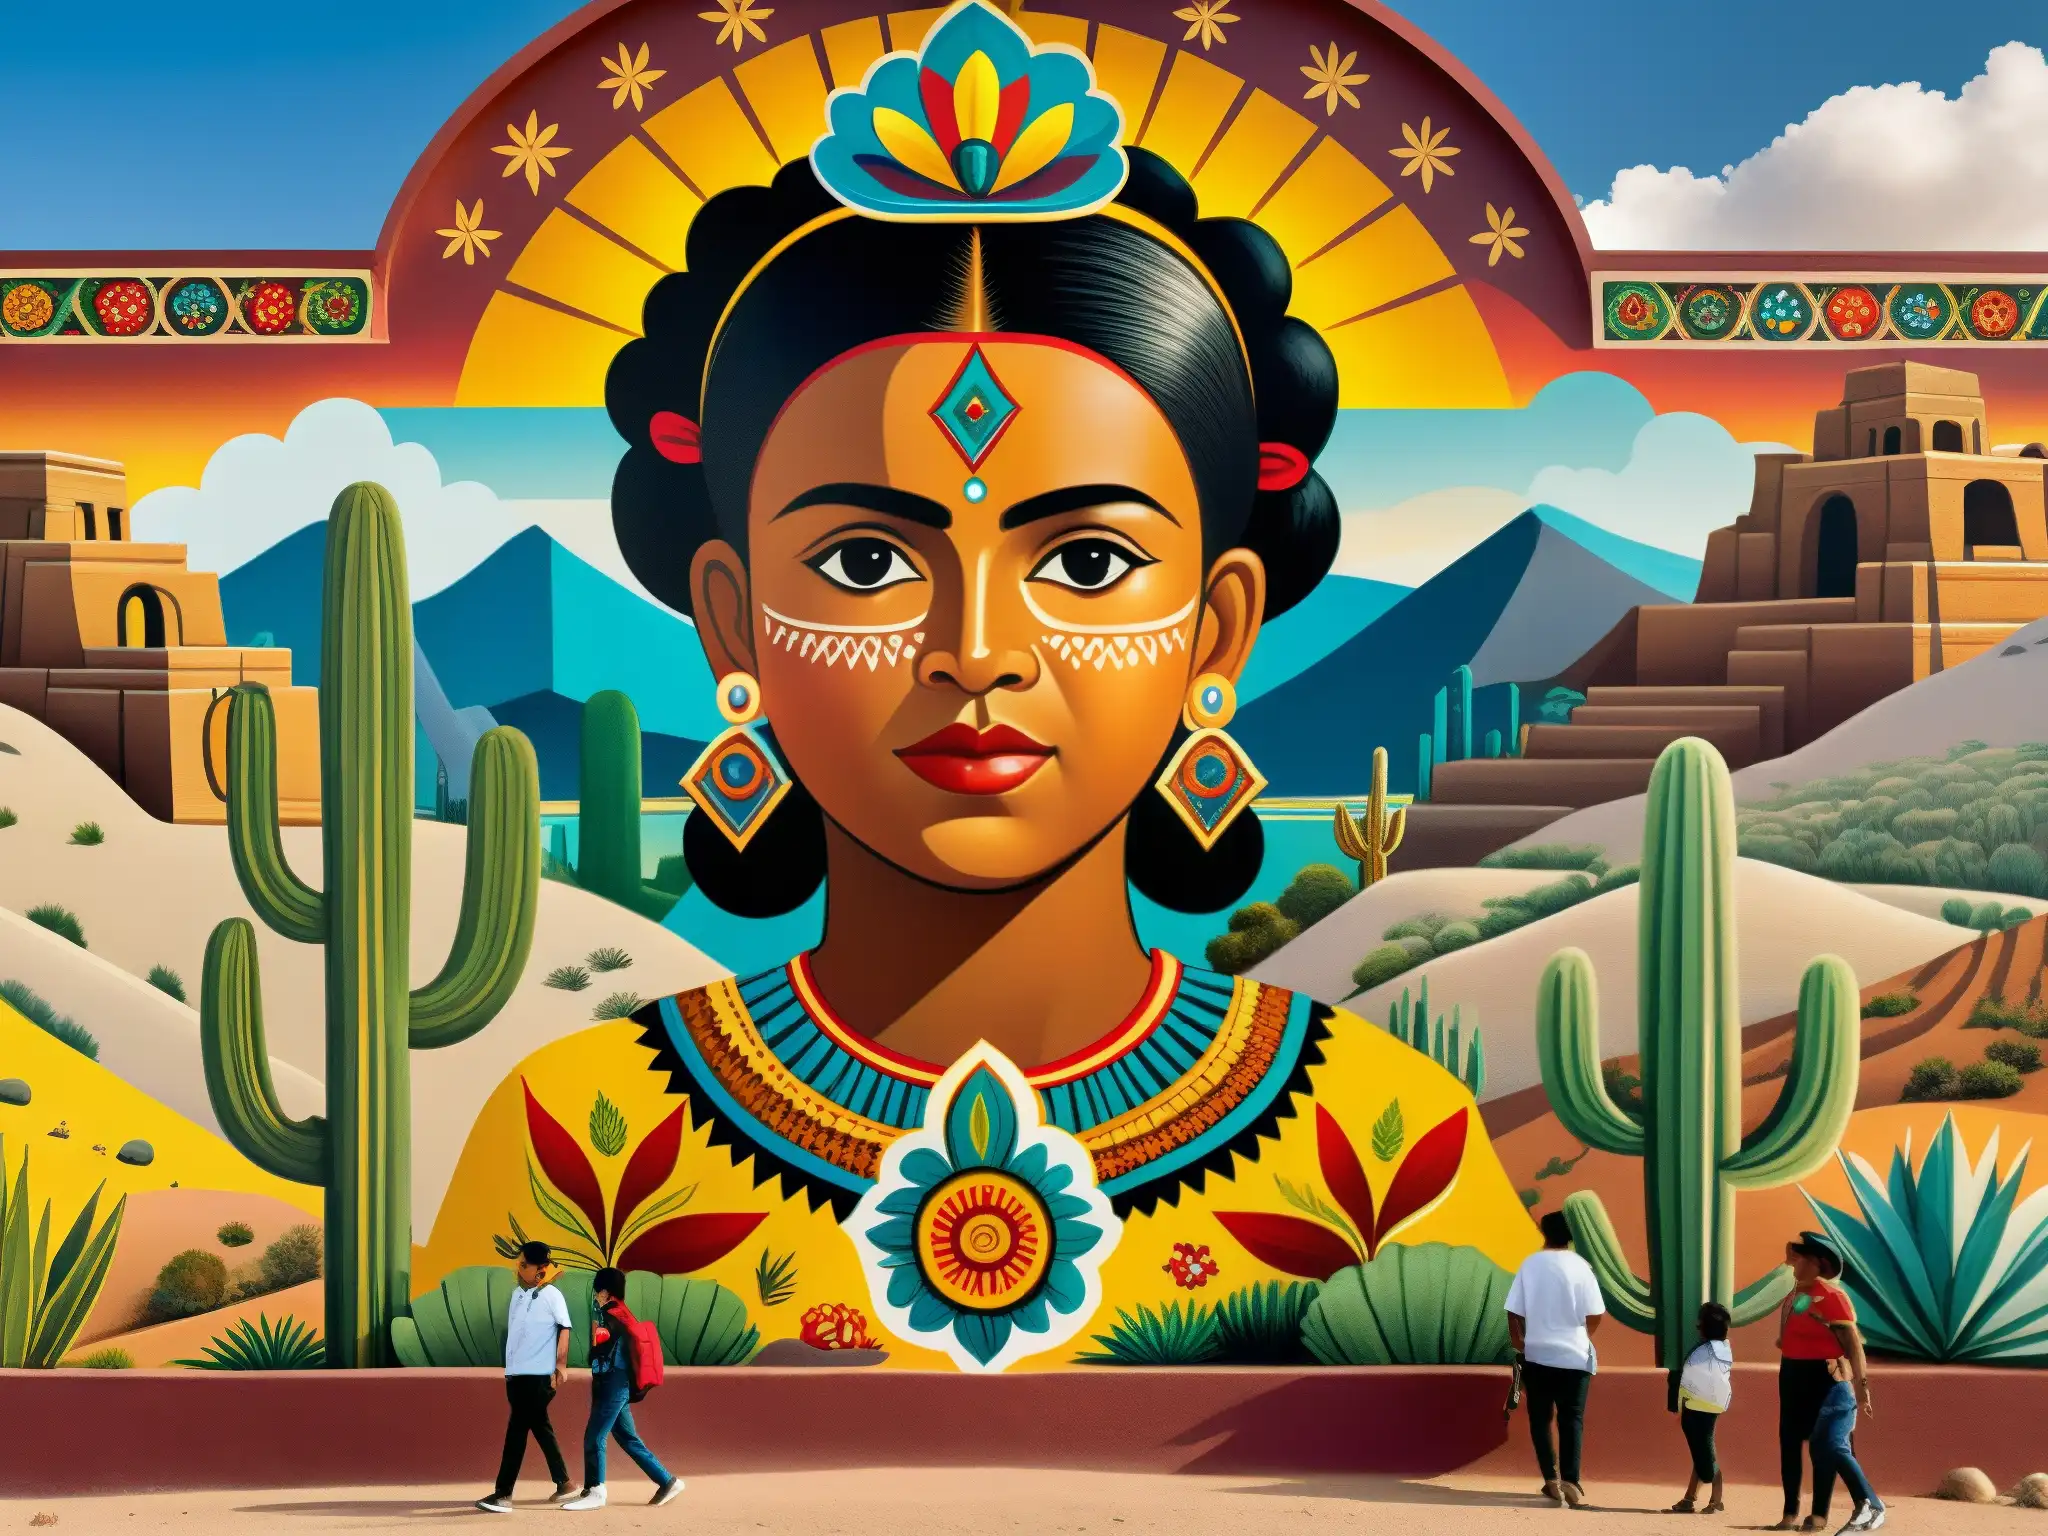 Imagen del vibrante mural del Niño Fidencio en el desierto, reflejando el legado esotérico del curandero mexicano